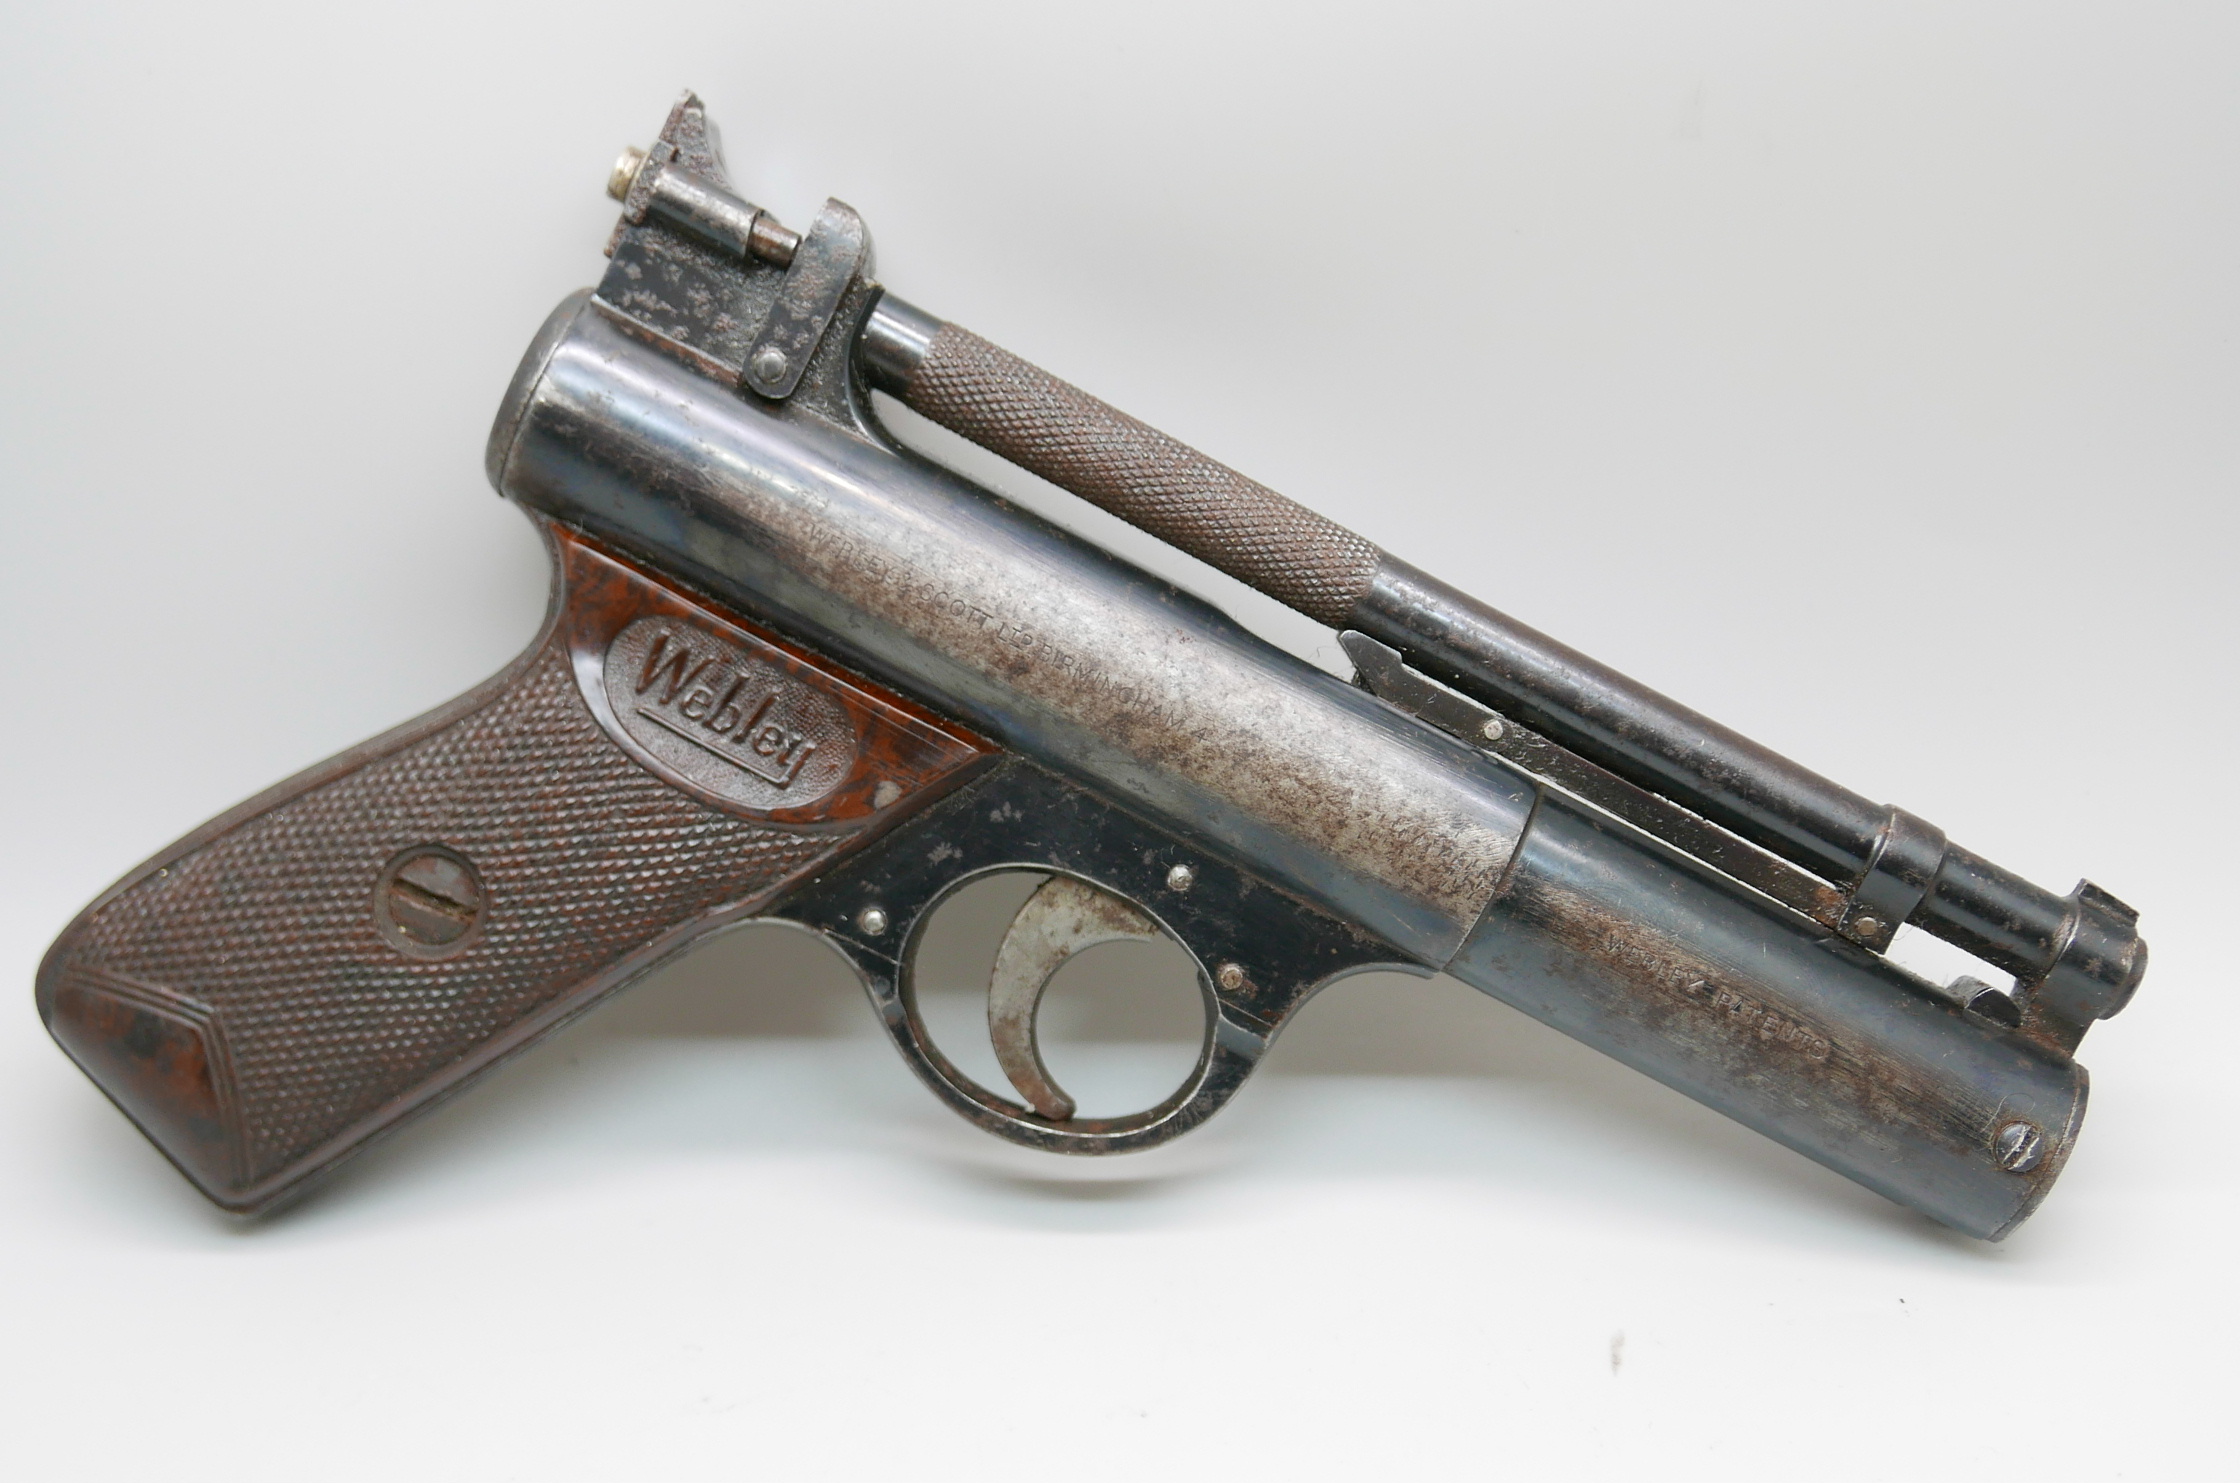 A 'The Webley' Senior pellet gun, made in England - Image 3 of 3